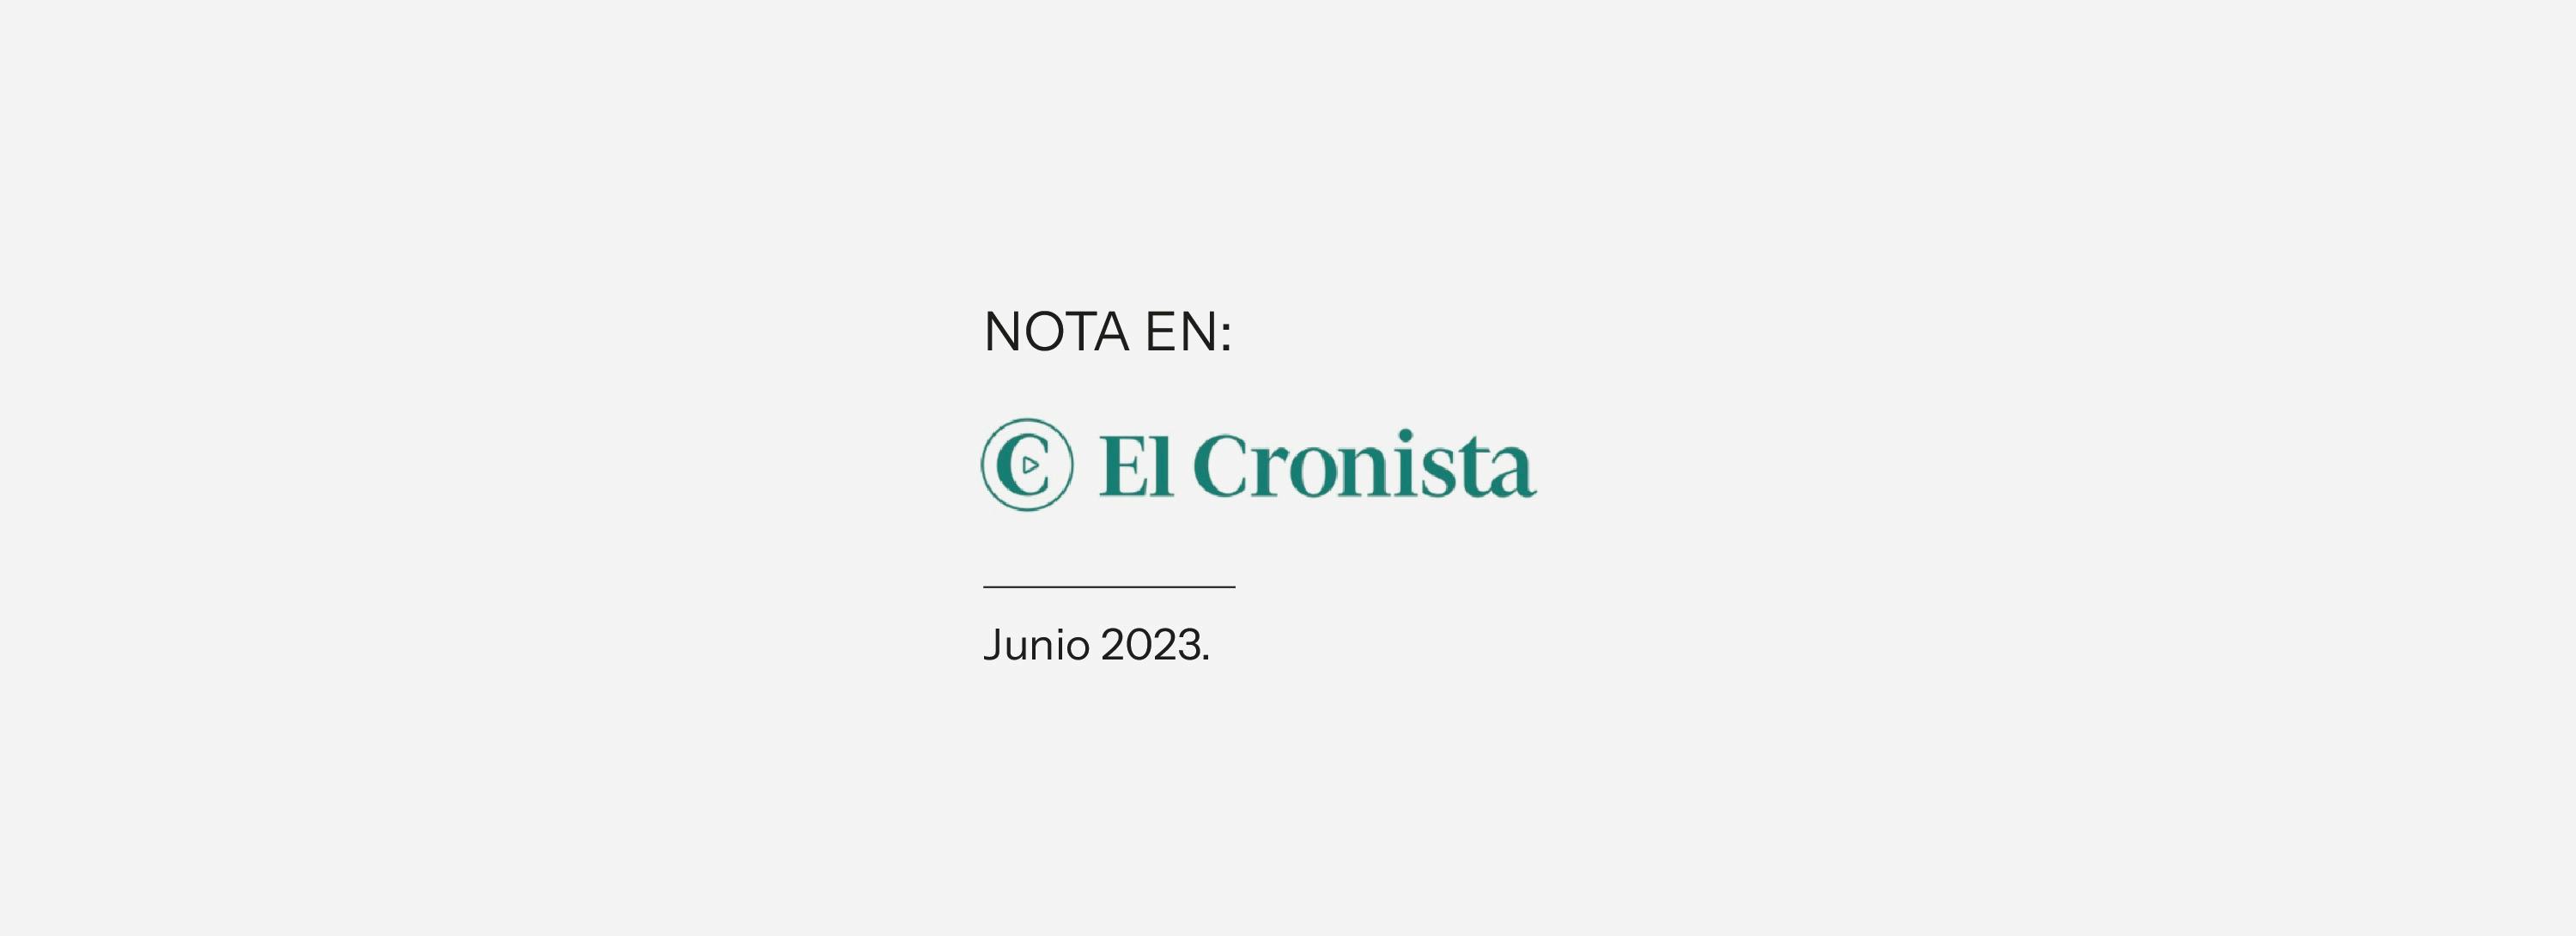 Nota en El Cronista sobre Nordelta, el nuevo desarrollo de la compañía